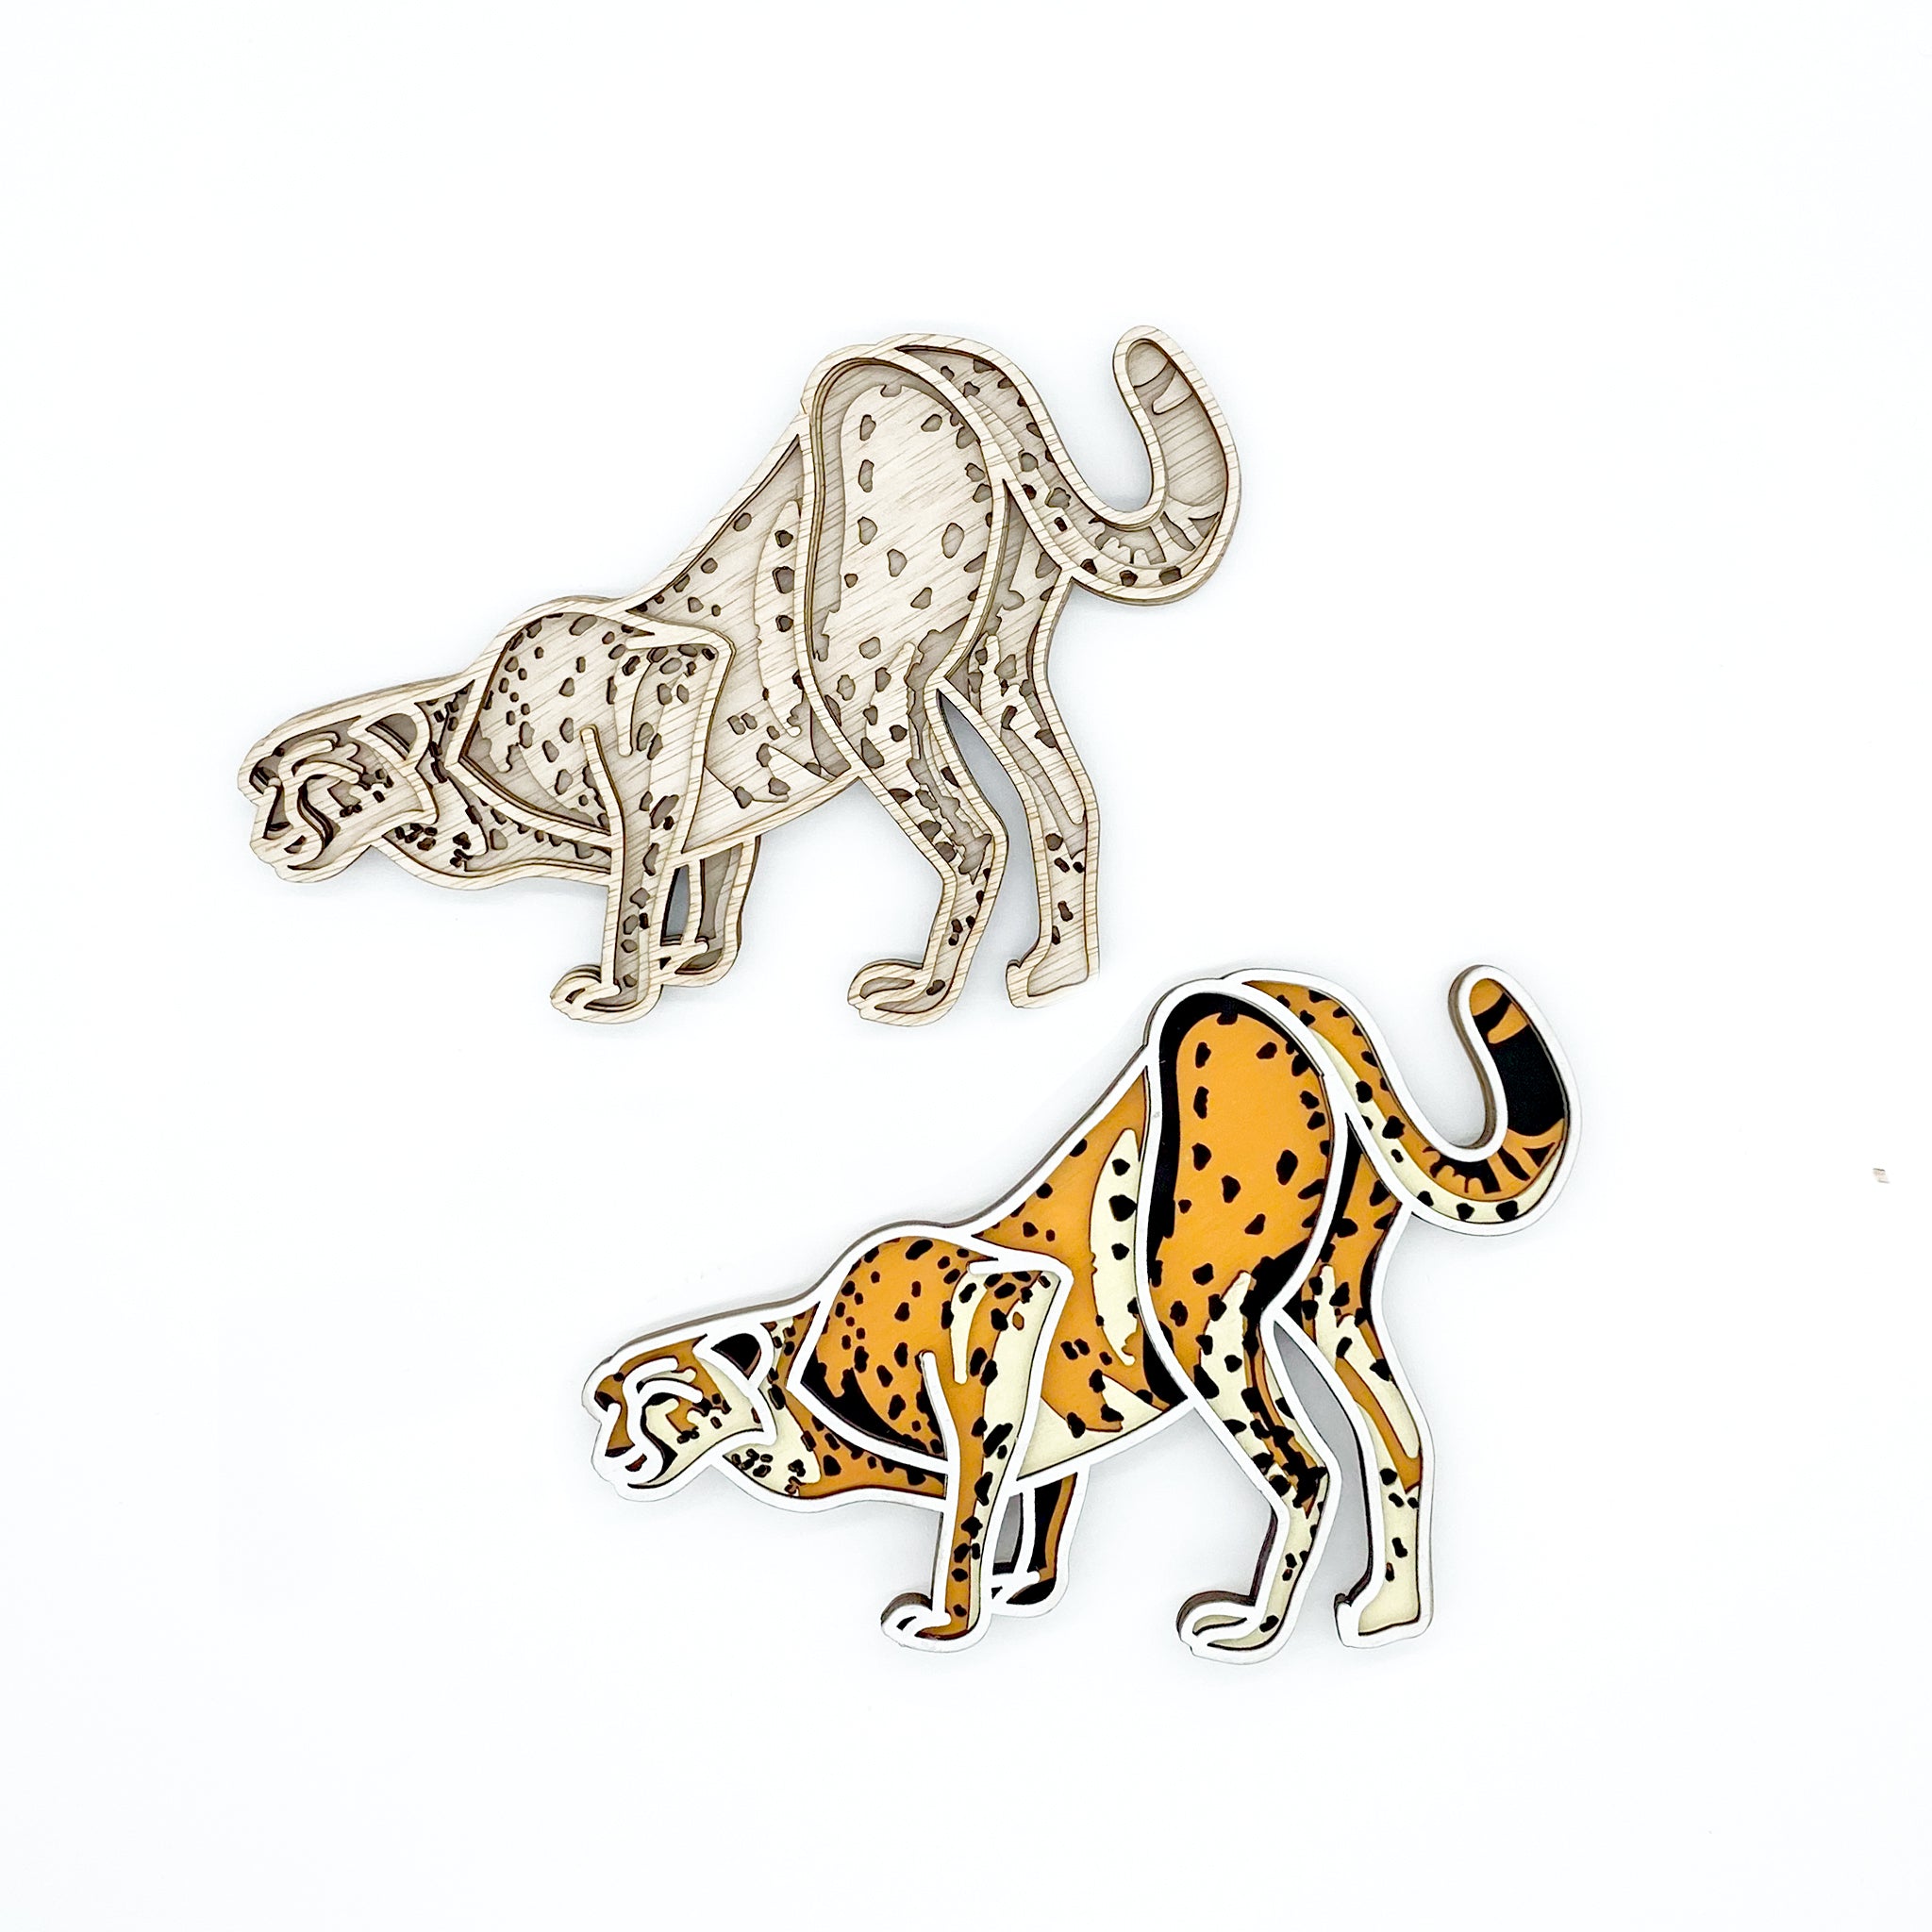 Cheetah Art Kit